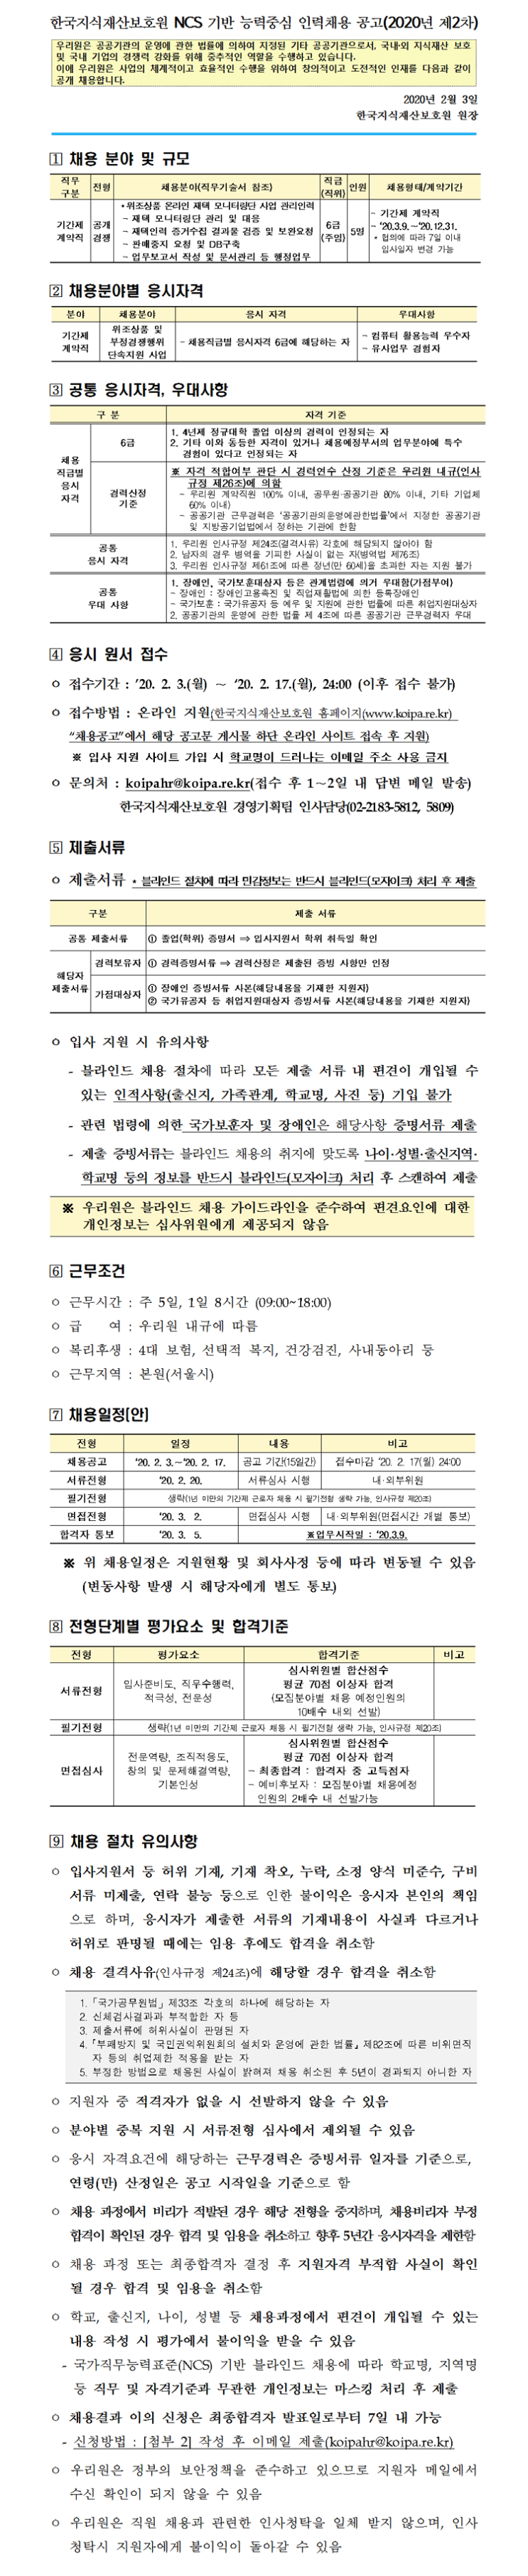 [채용][한국지식재산보호원] 2020년 제2차 인력채용 공고문